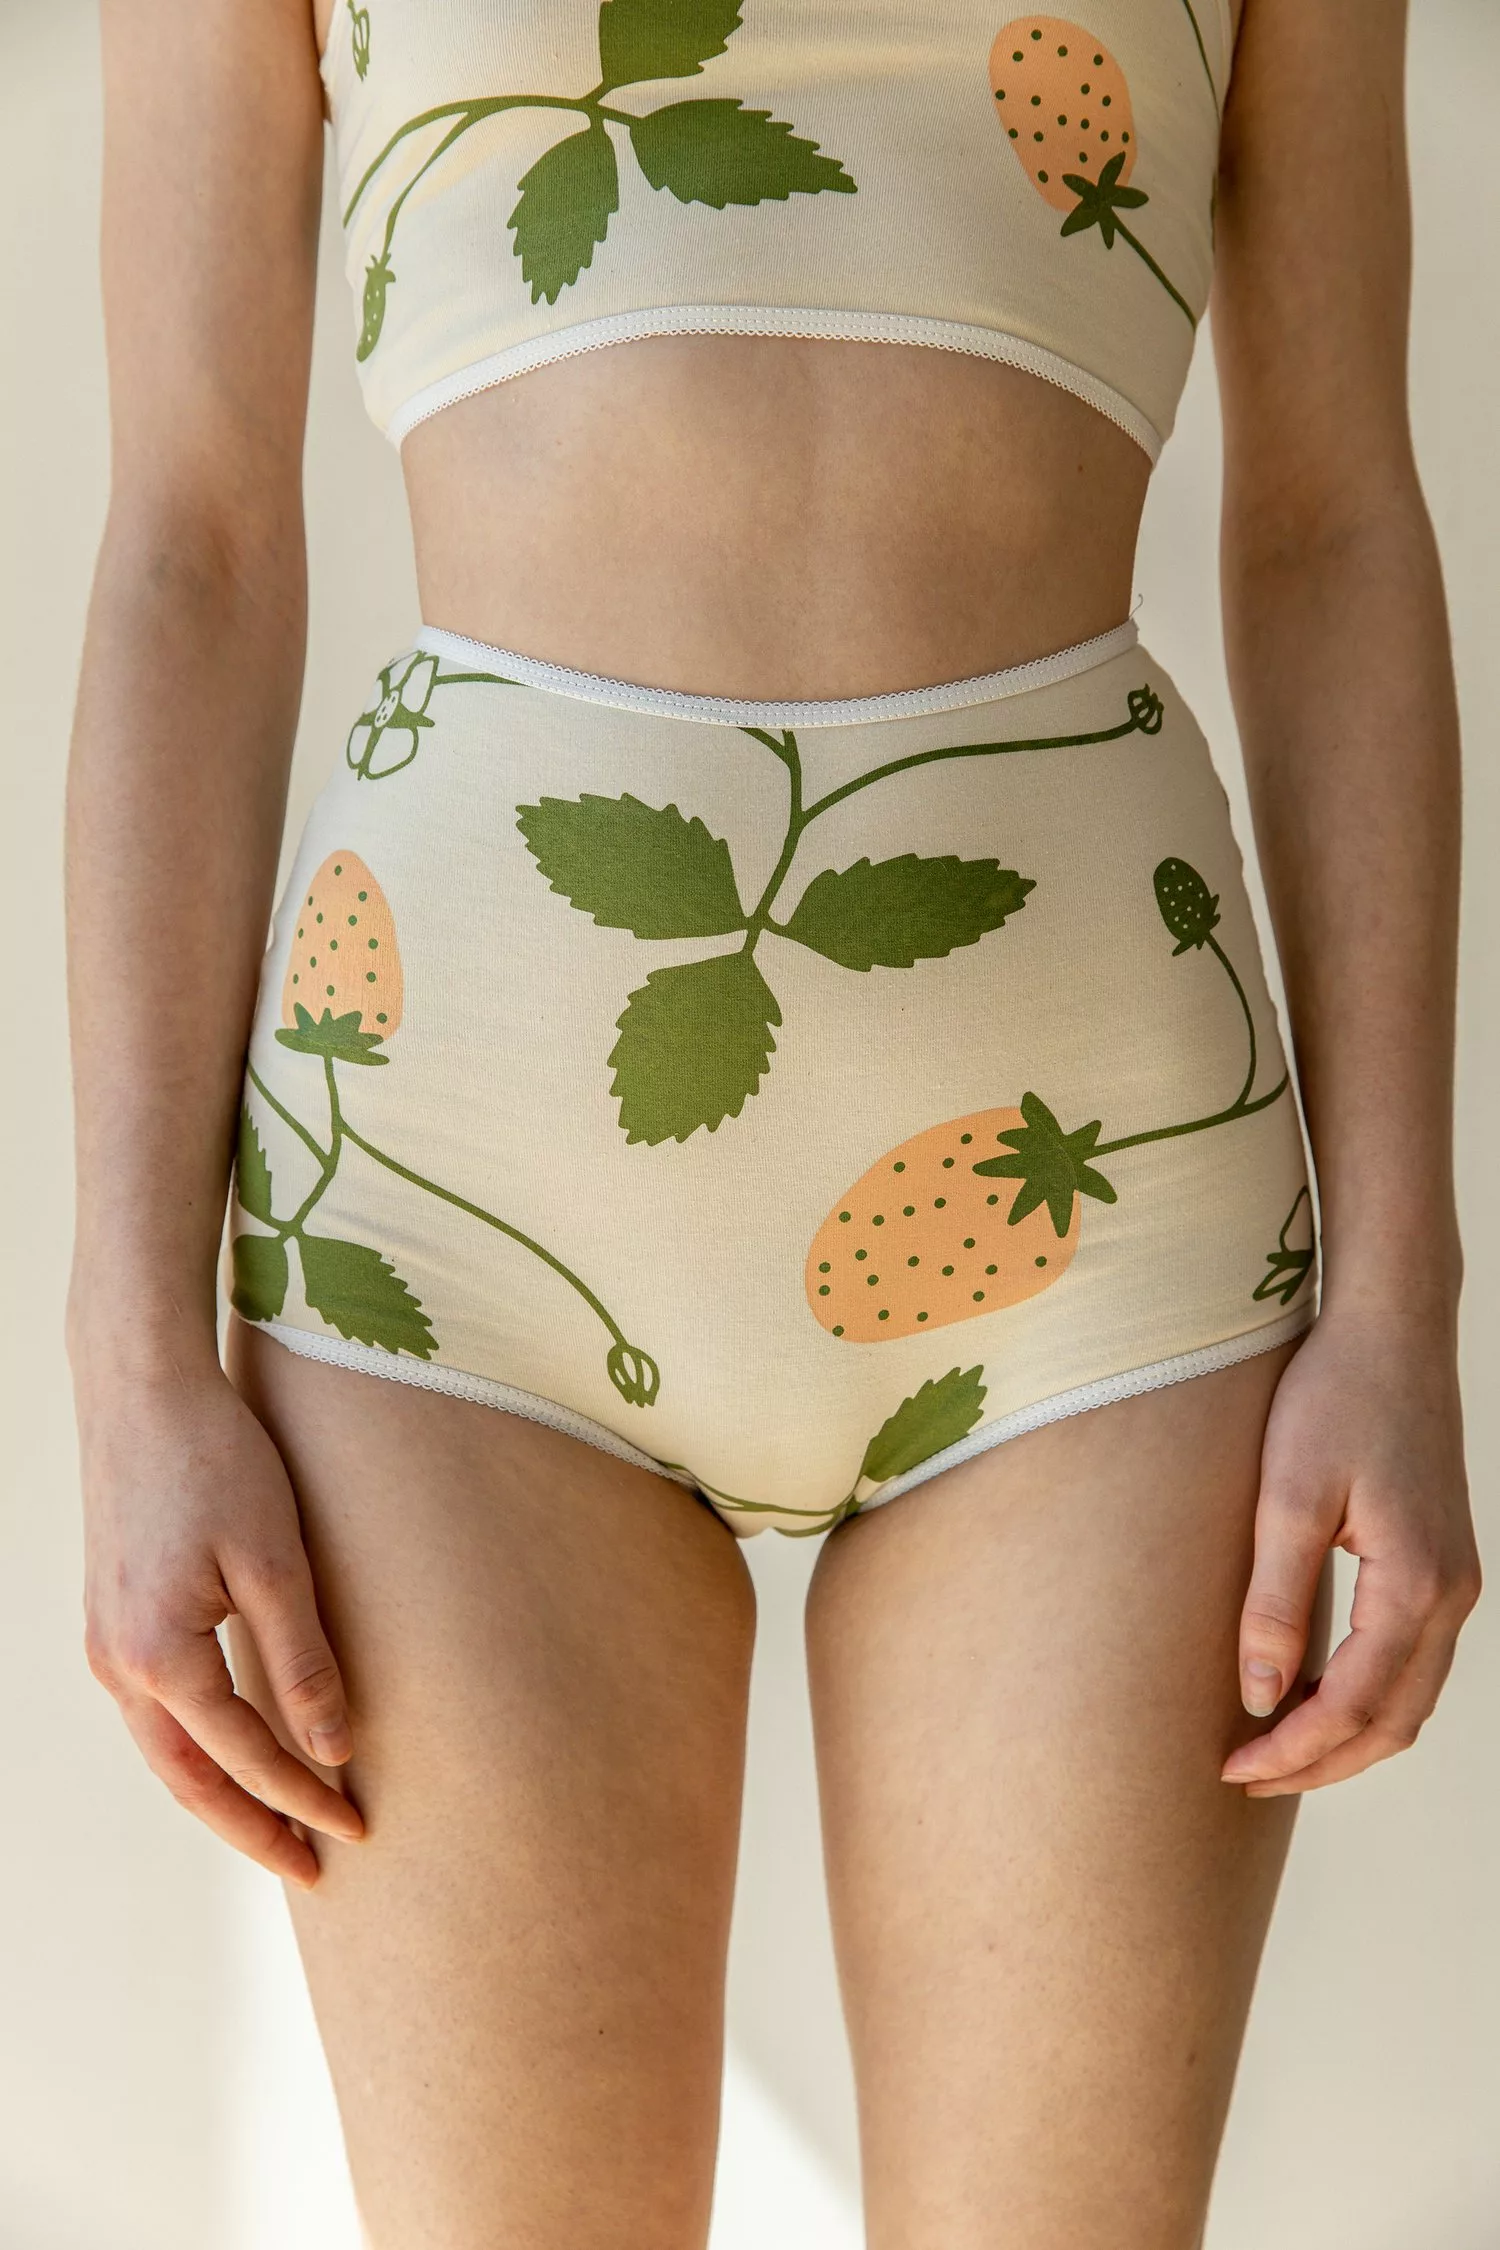 Top 10 Hemp Underwear Brands For Sustainable Comfort — Ecowiser